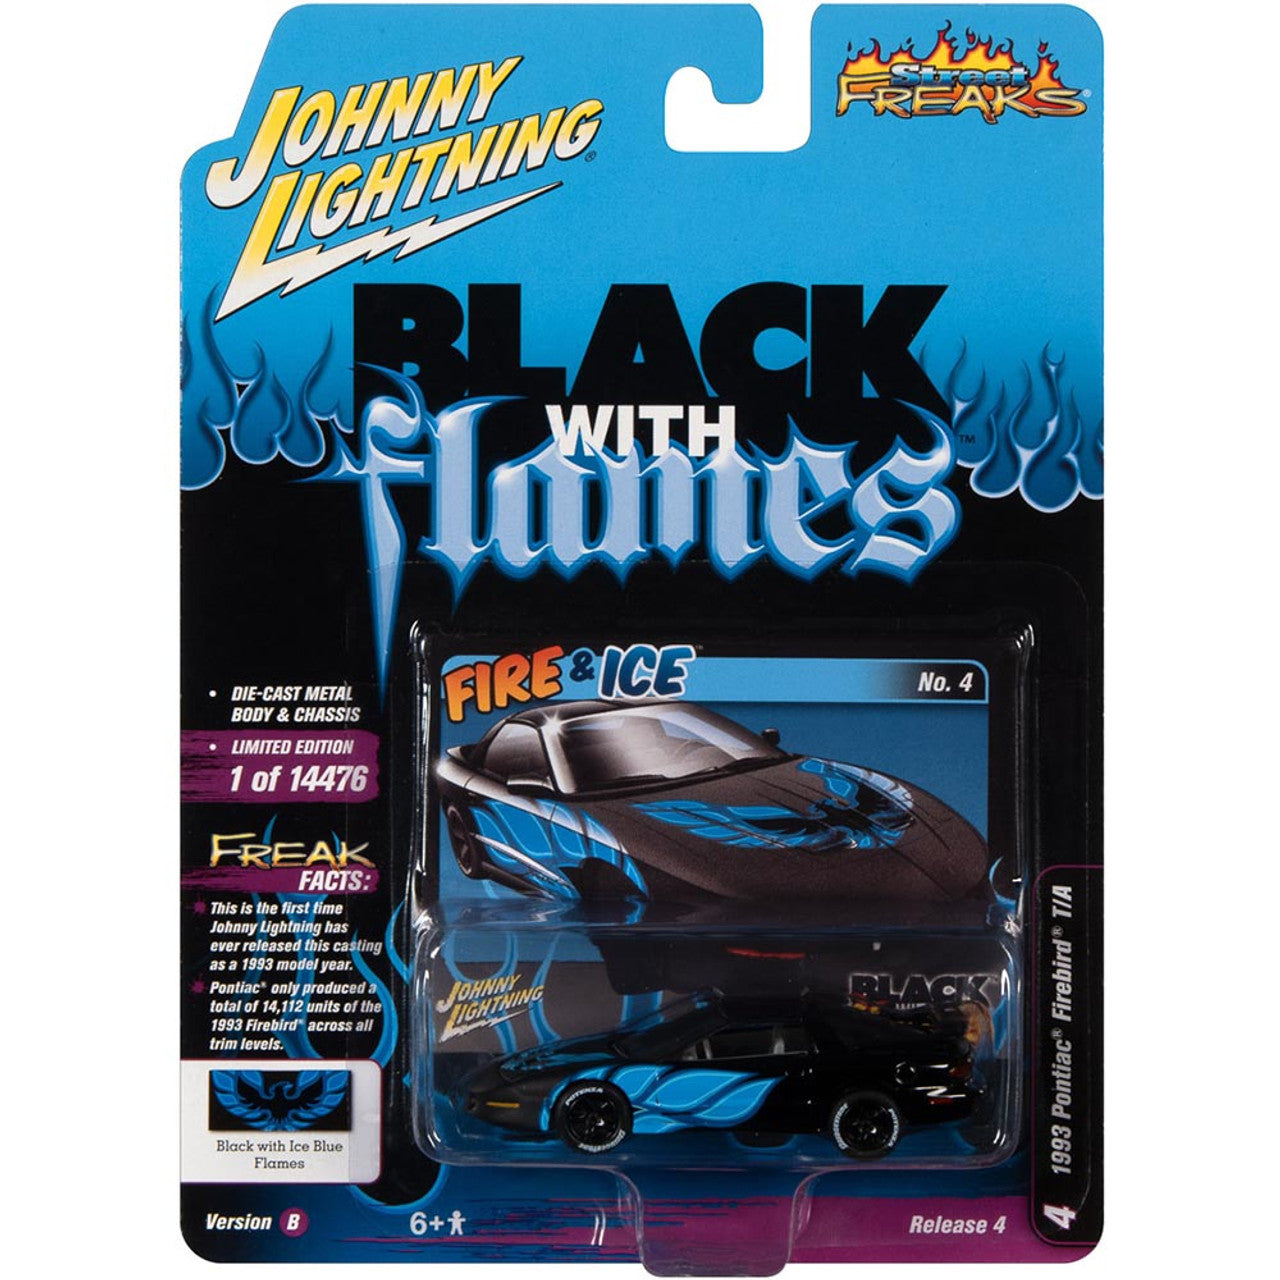 1993 Pontiac Firebird T/A - Black with Blue Flames 1:64 Scale Diecast Replica Model